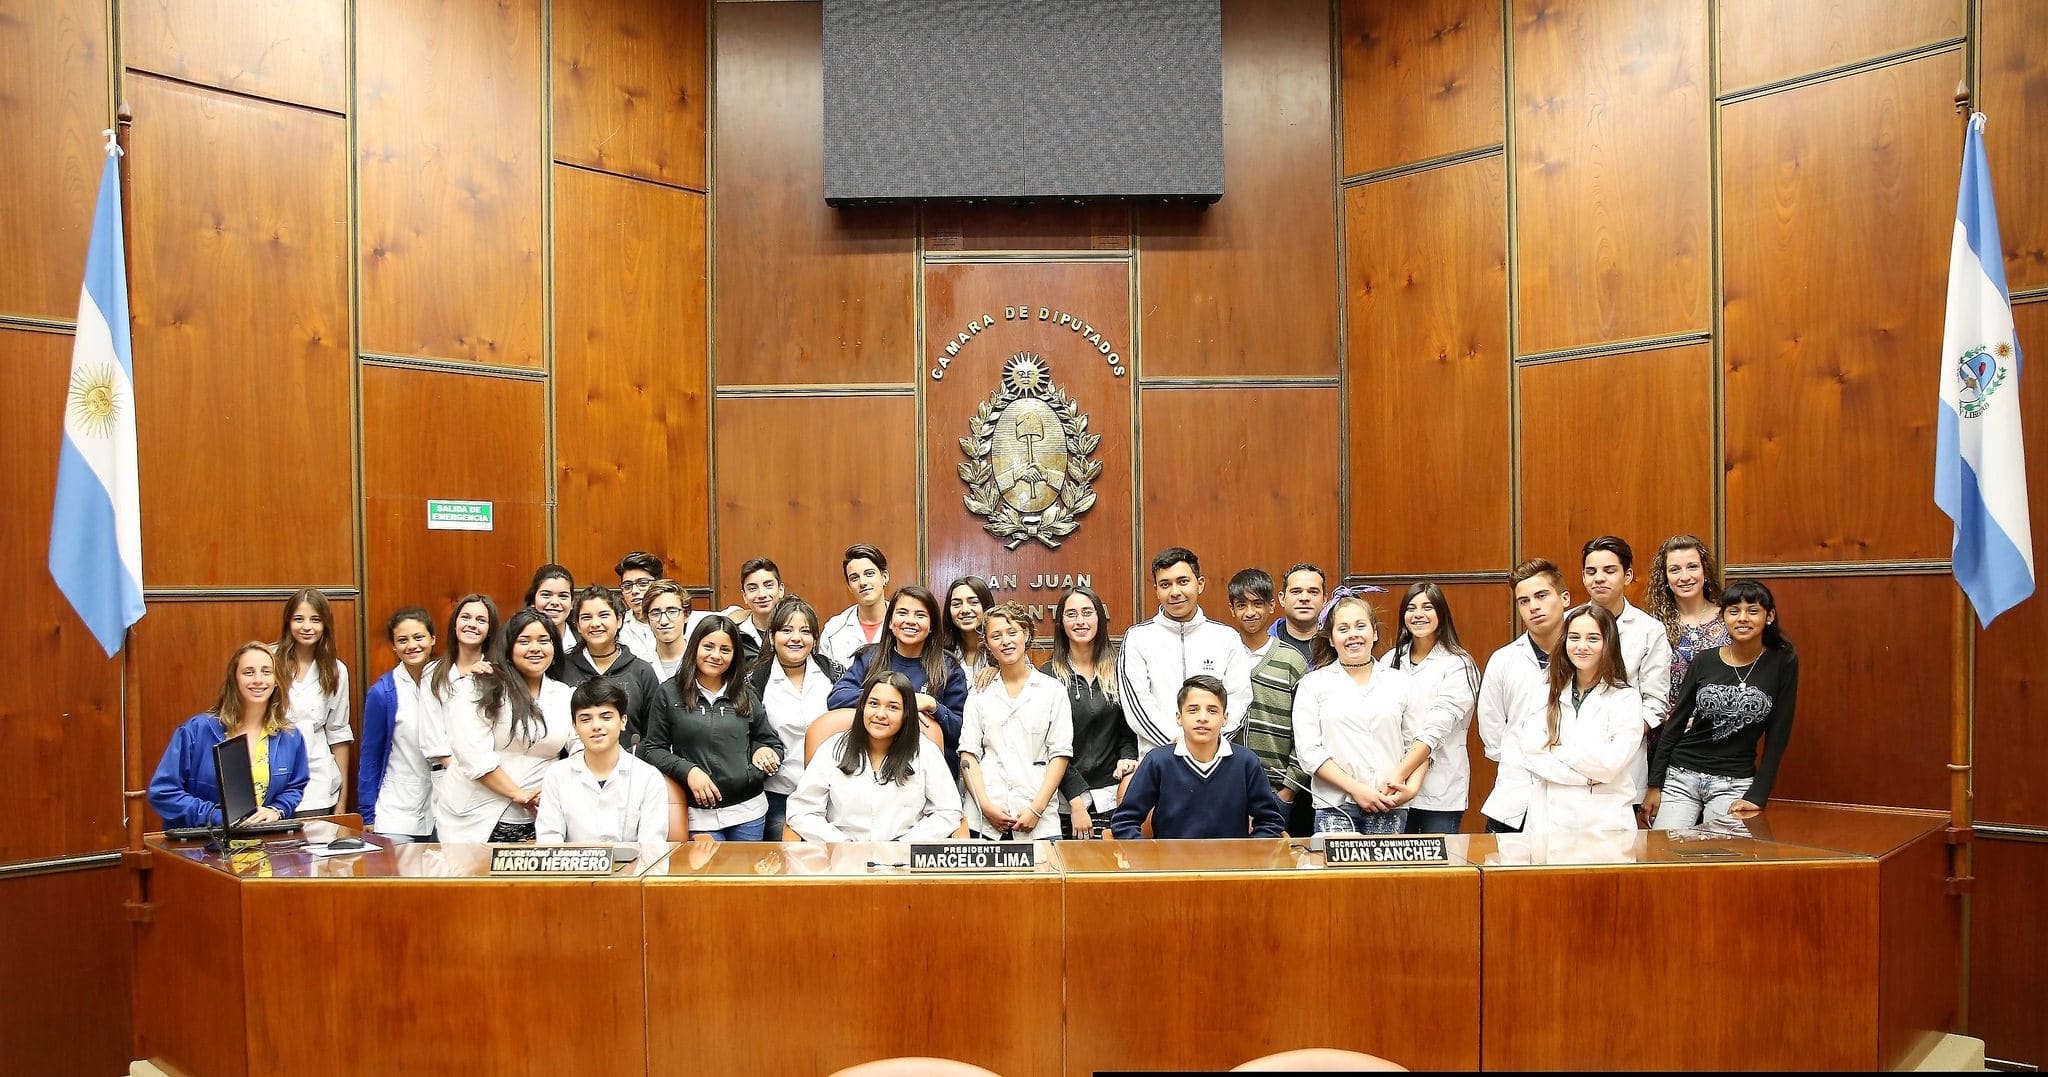 Alumnos y docentes de la escuela "Juan Pestalozzi" y del colegio "Provincial de Rivadavia" en la Cámara de Diputados. 